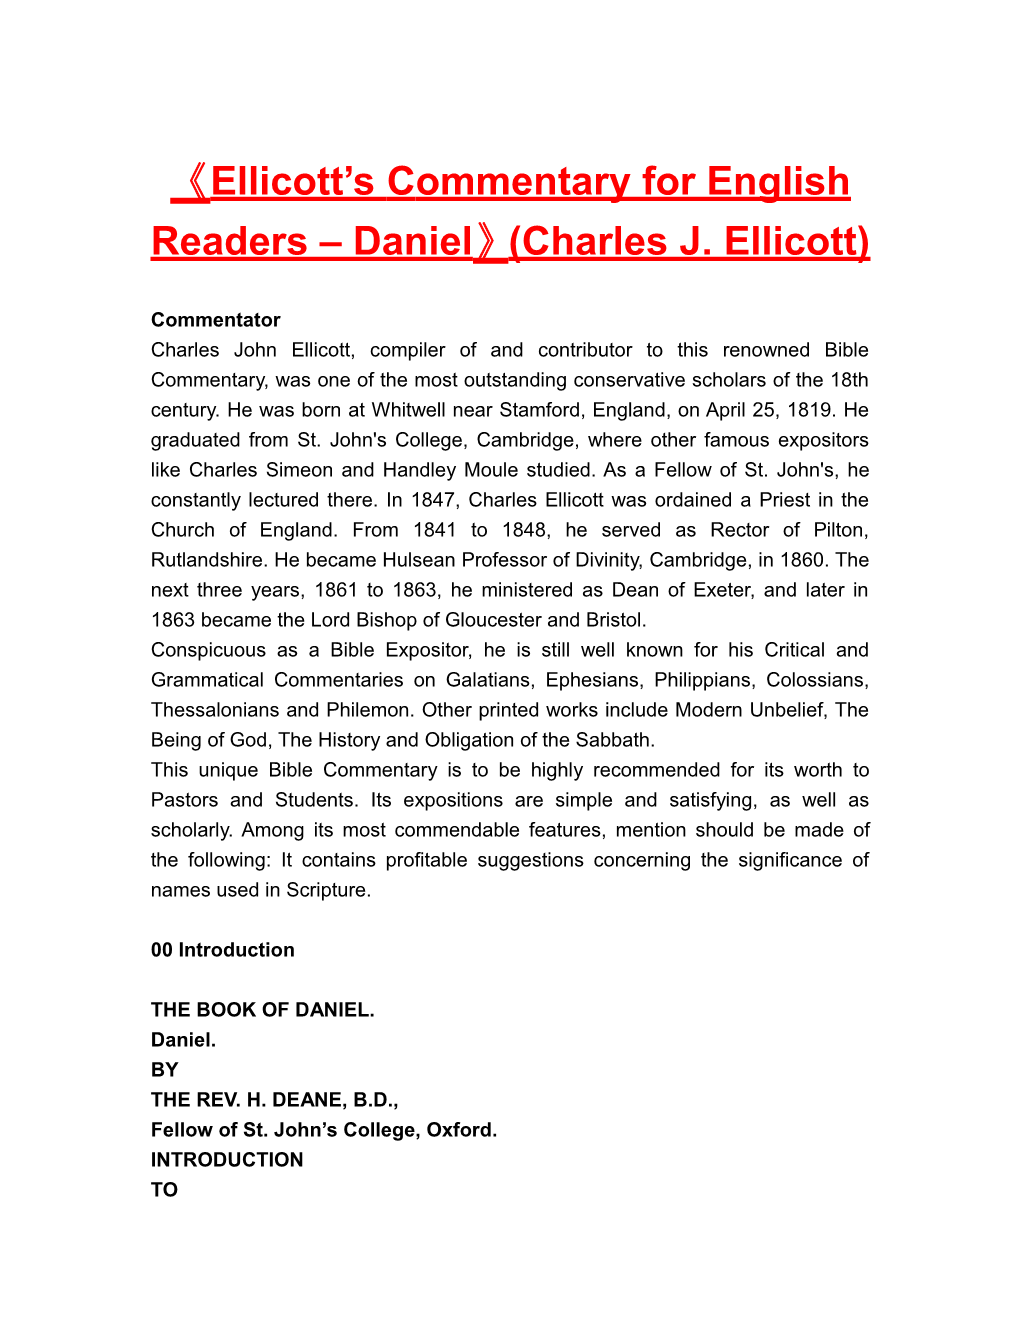 Ellicott Scommentary for English Readers Daniel (Charles J. Ellicott)